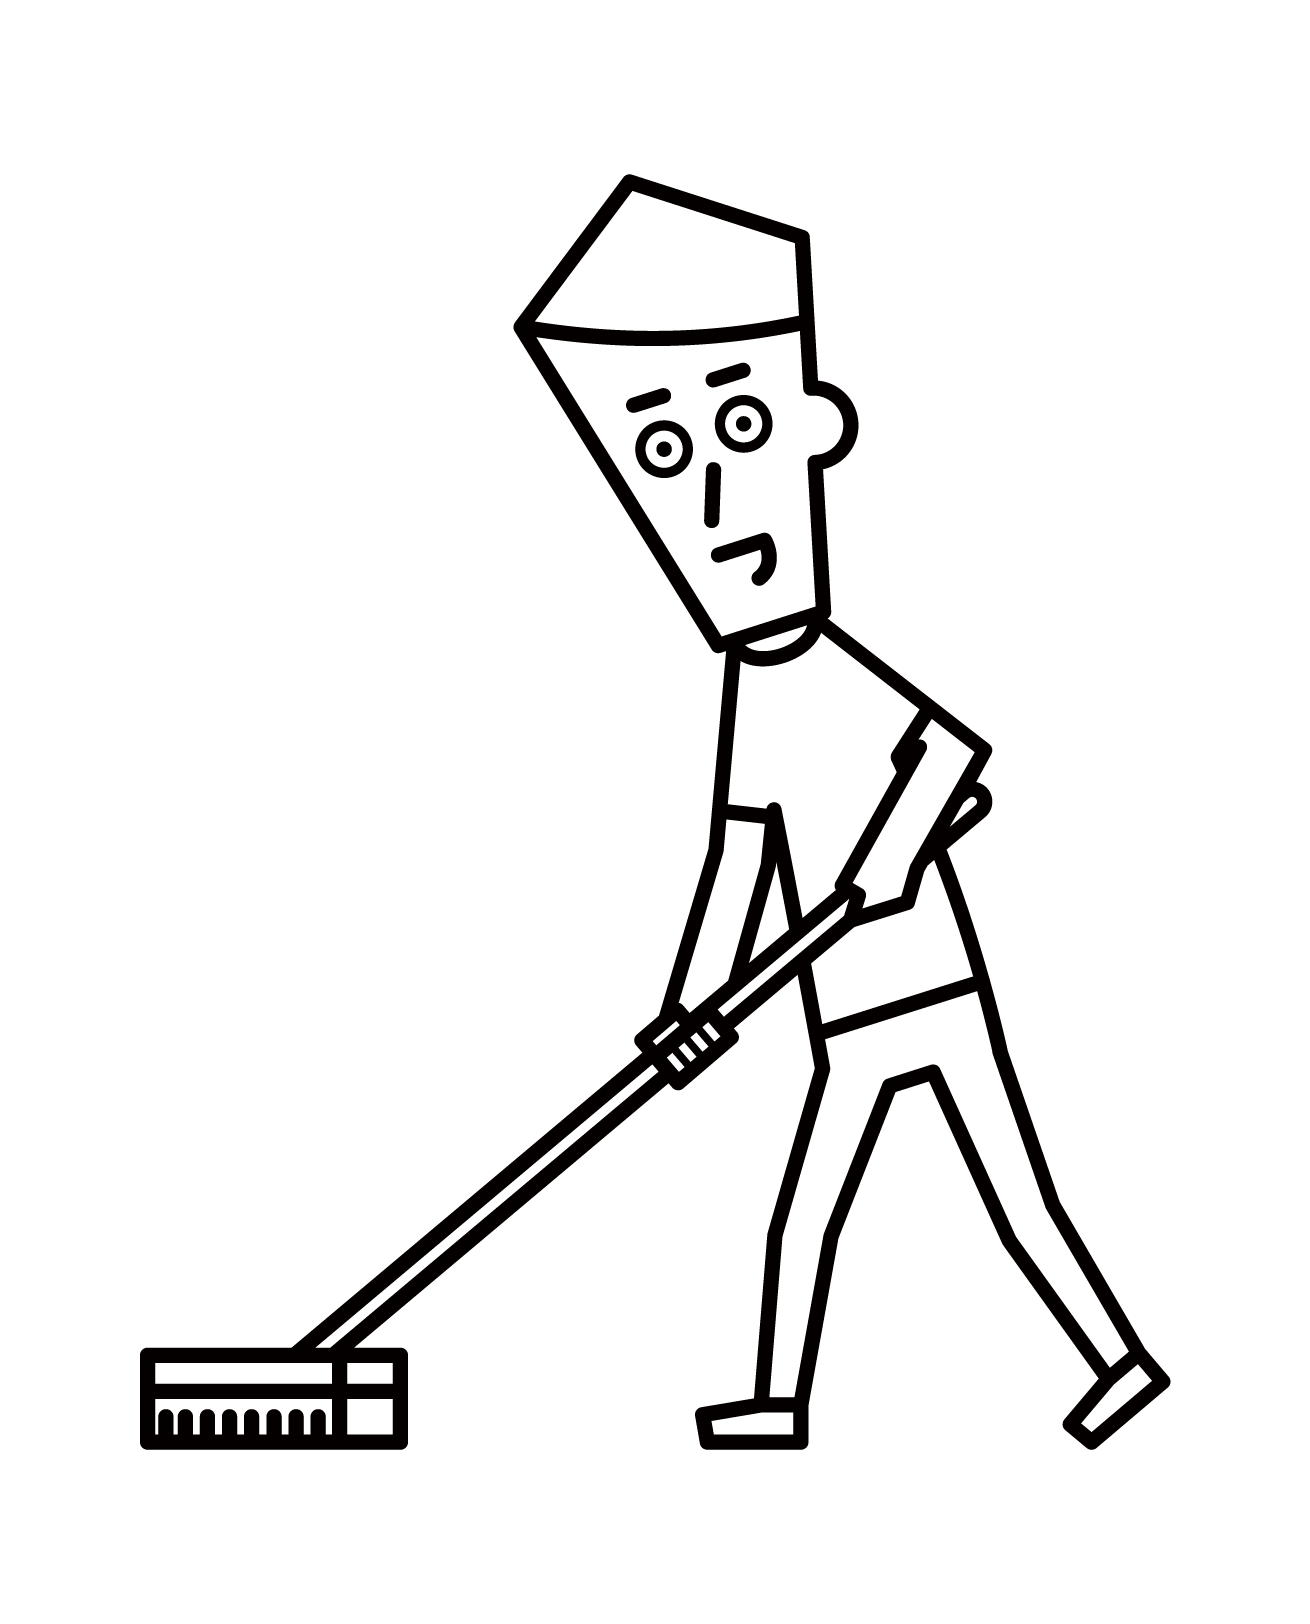 브러시로 청소하는 사람 (남성)의 그림